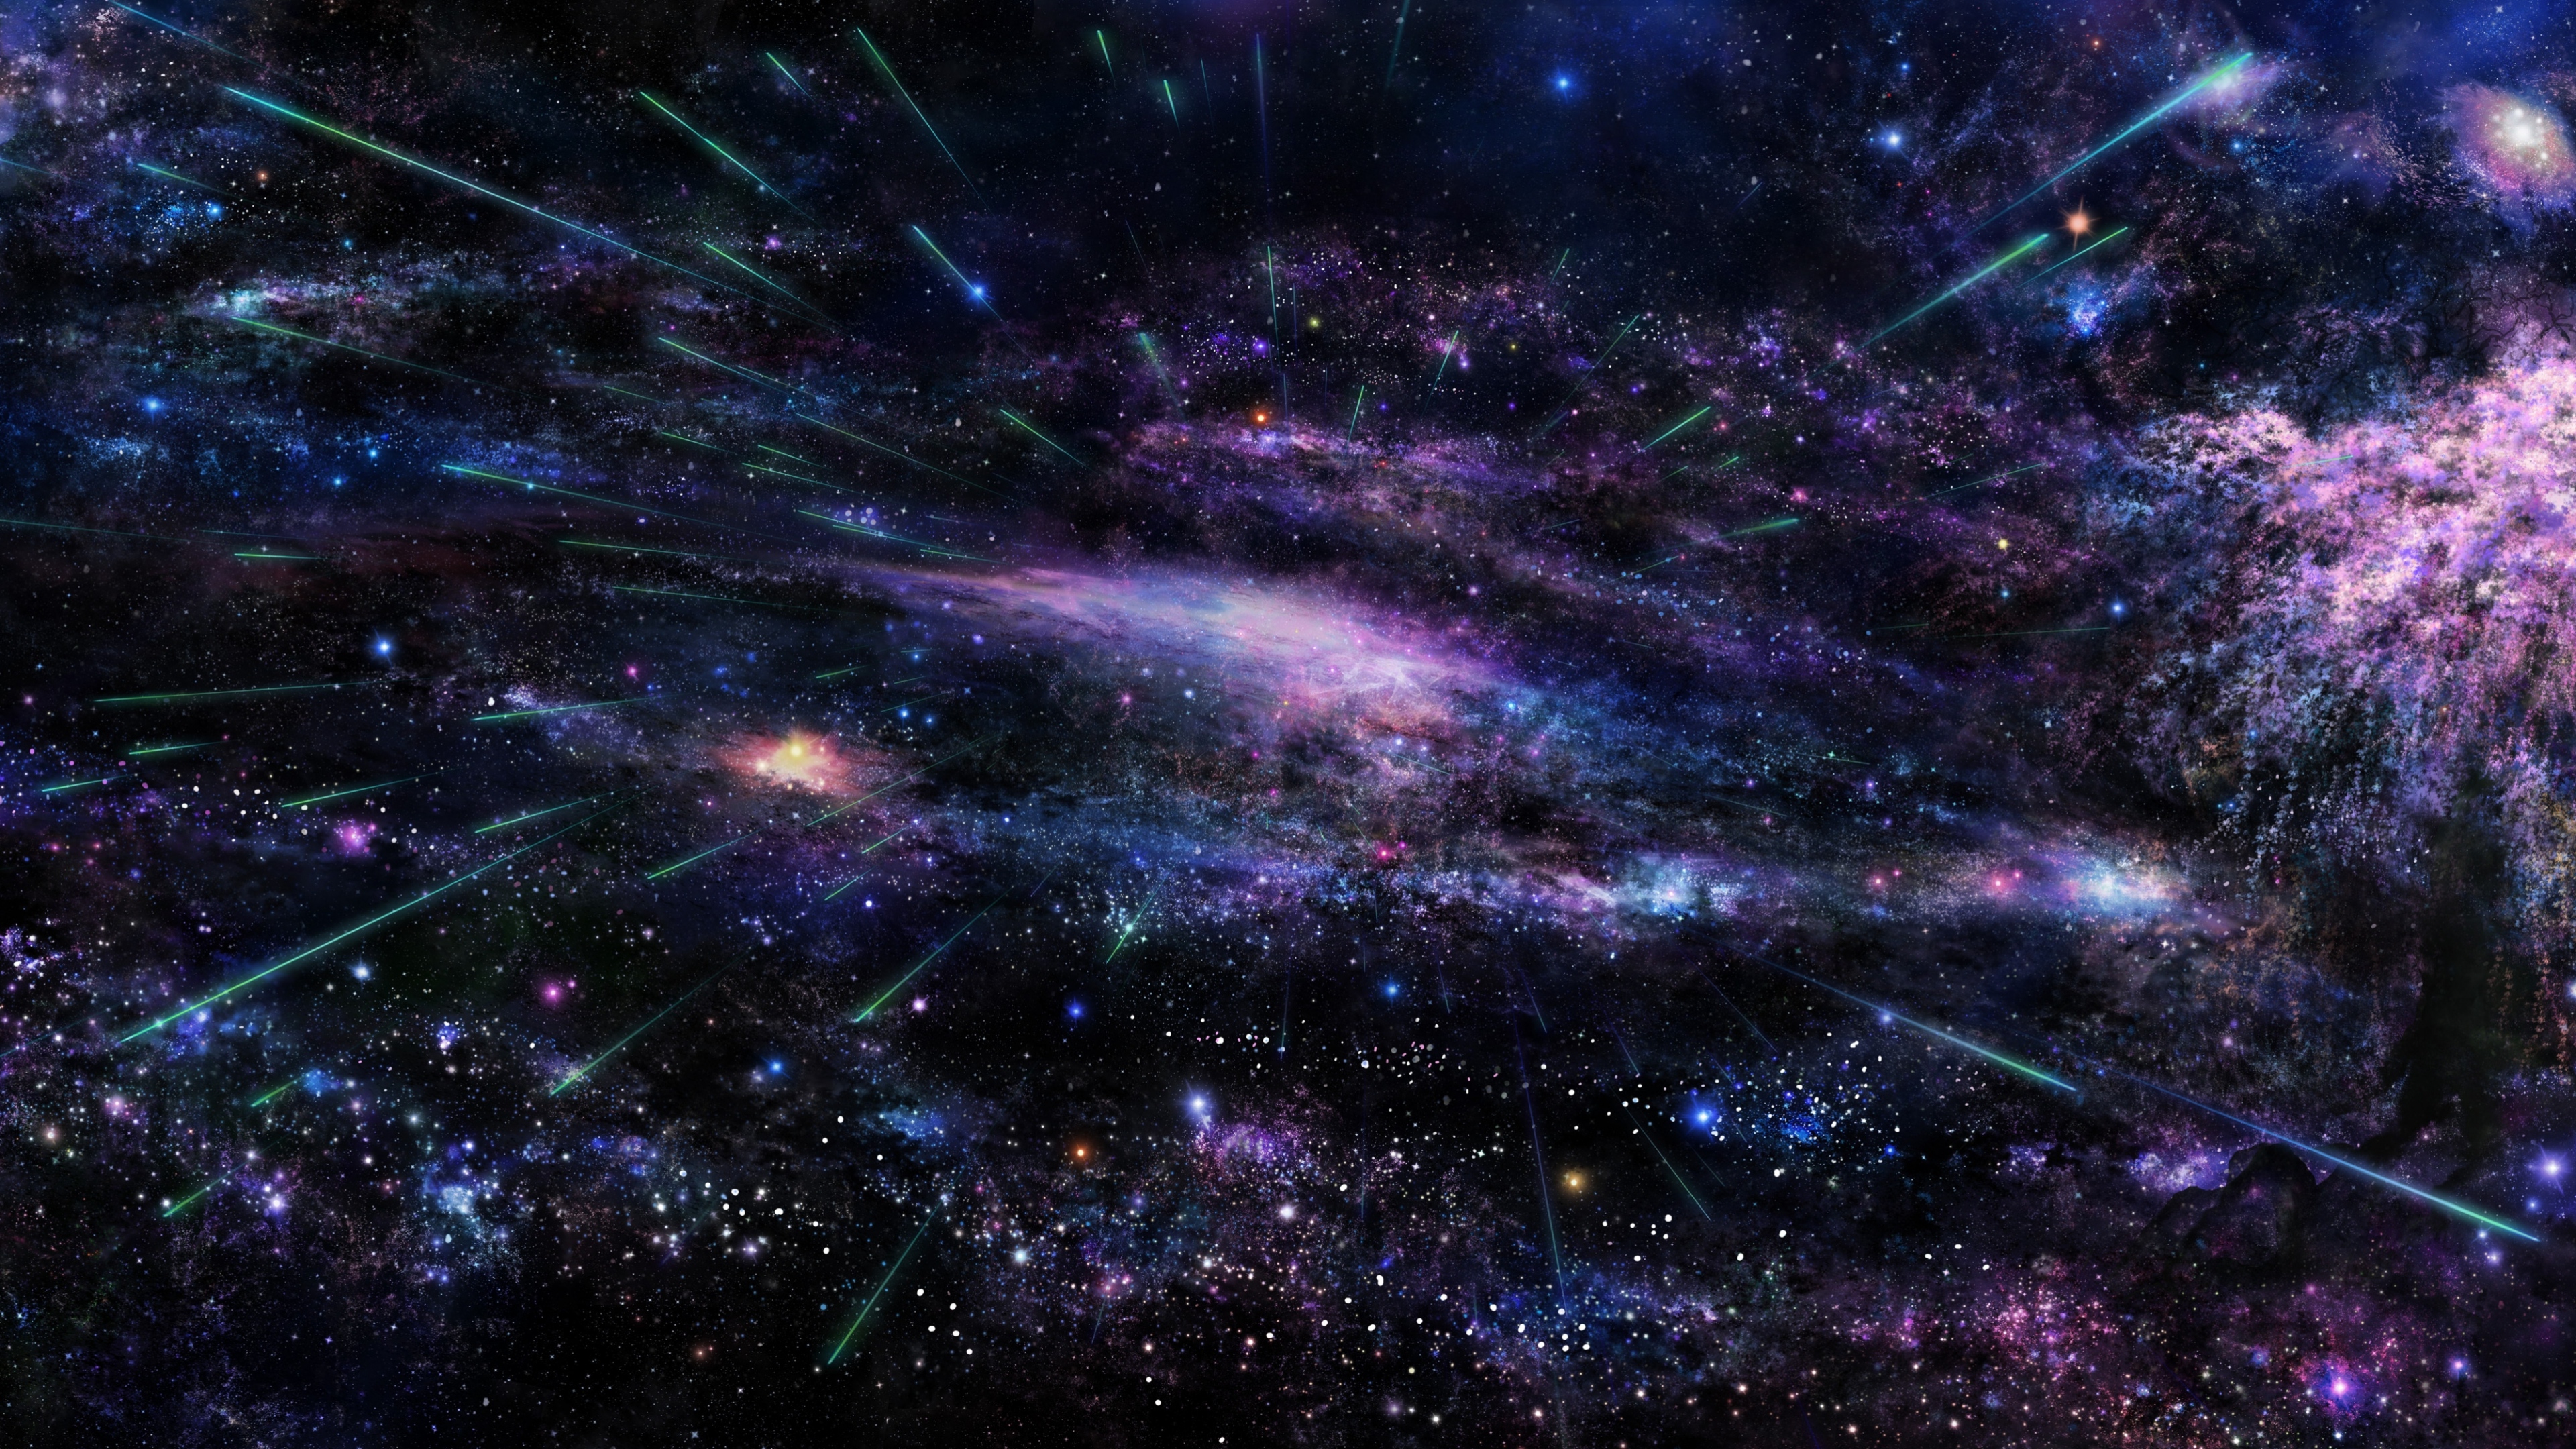 Hình nền 4K Background galaxy 4k sẽ đưa bạn đến một thế giới vô cùng thú vị và bí ẩn. Với màn hình tái hiện chân thực những hình ảnh vũ trụ đầy tuyệt đẹp, bạn sẽ cảm nhận được sự sống động và mê hoặc của thế giới vô tận. Hãy cùng trải nghiệm và tận hưởng sự tuyệt vời từ hình nền 4K này.